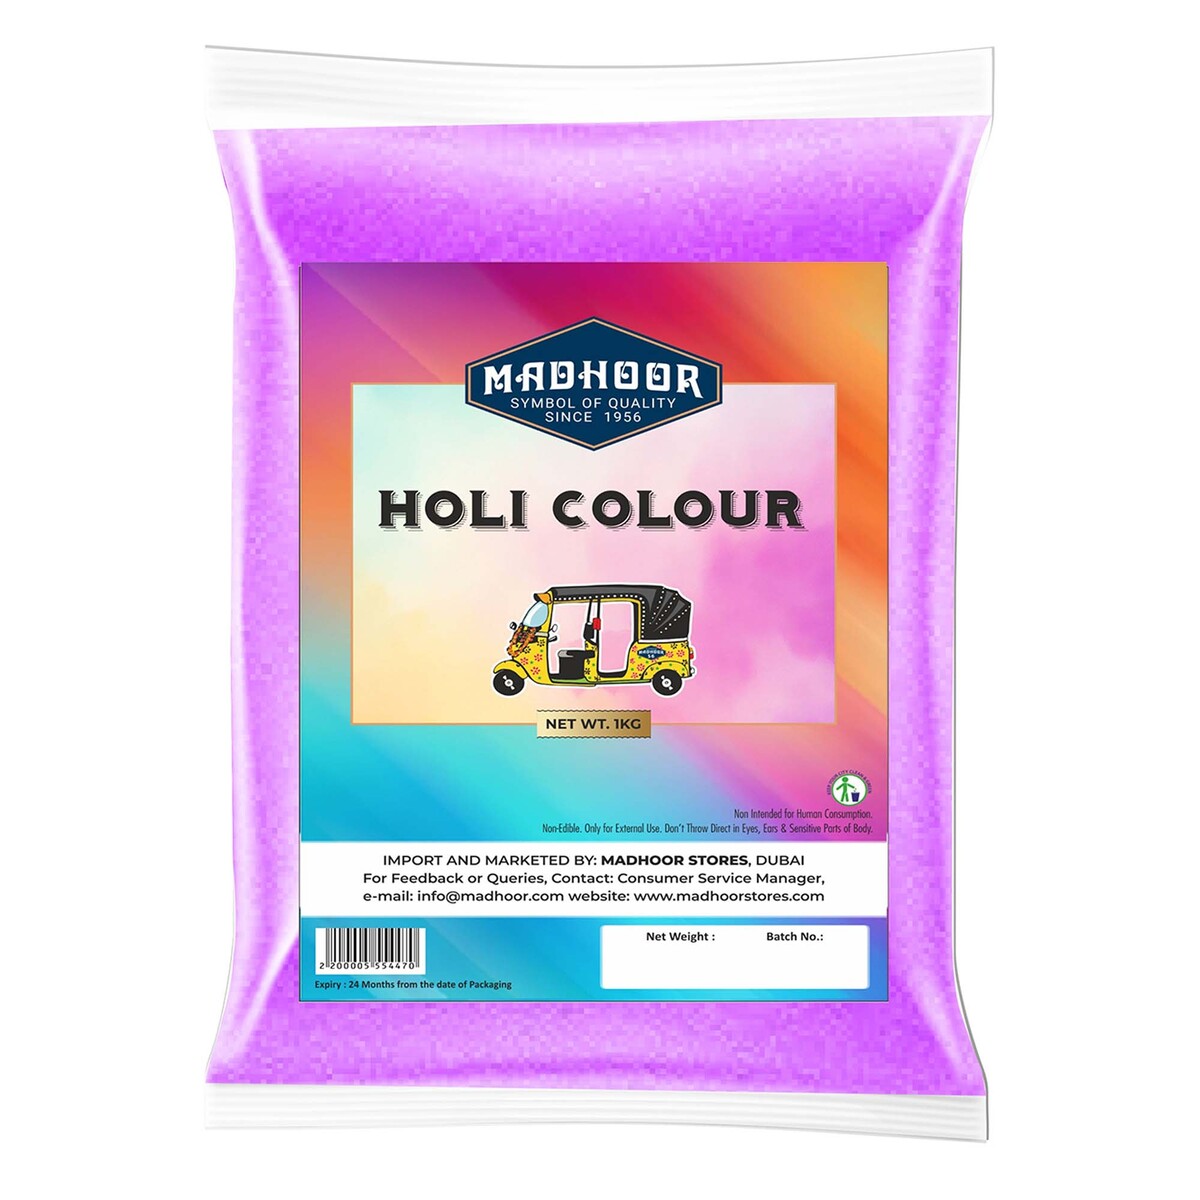 Madhoor Holi Color Powder 1kg Assorted